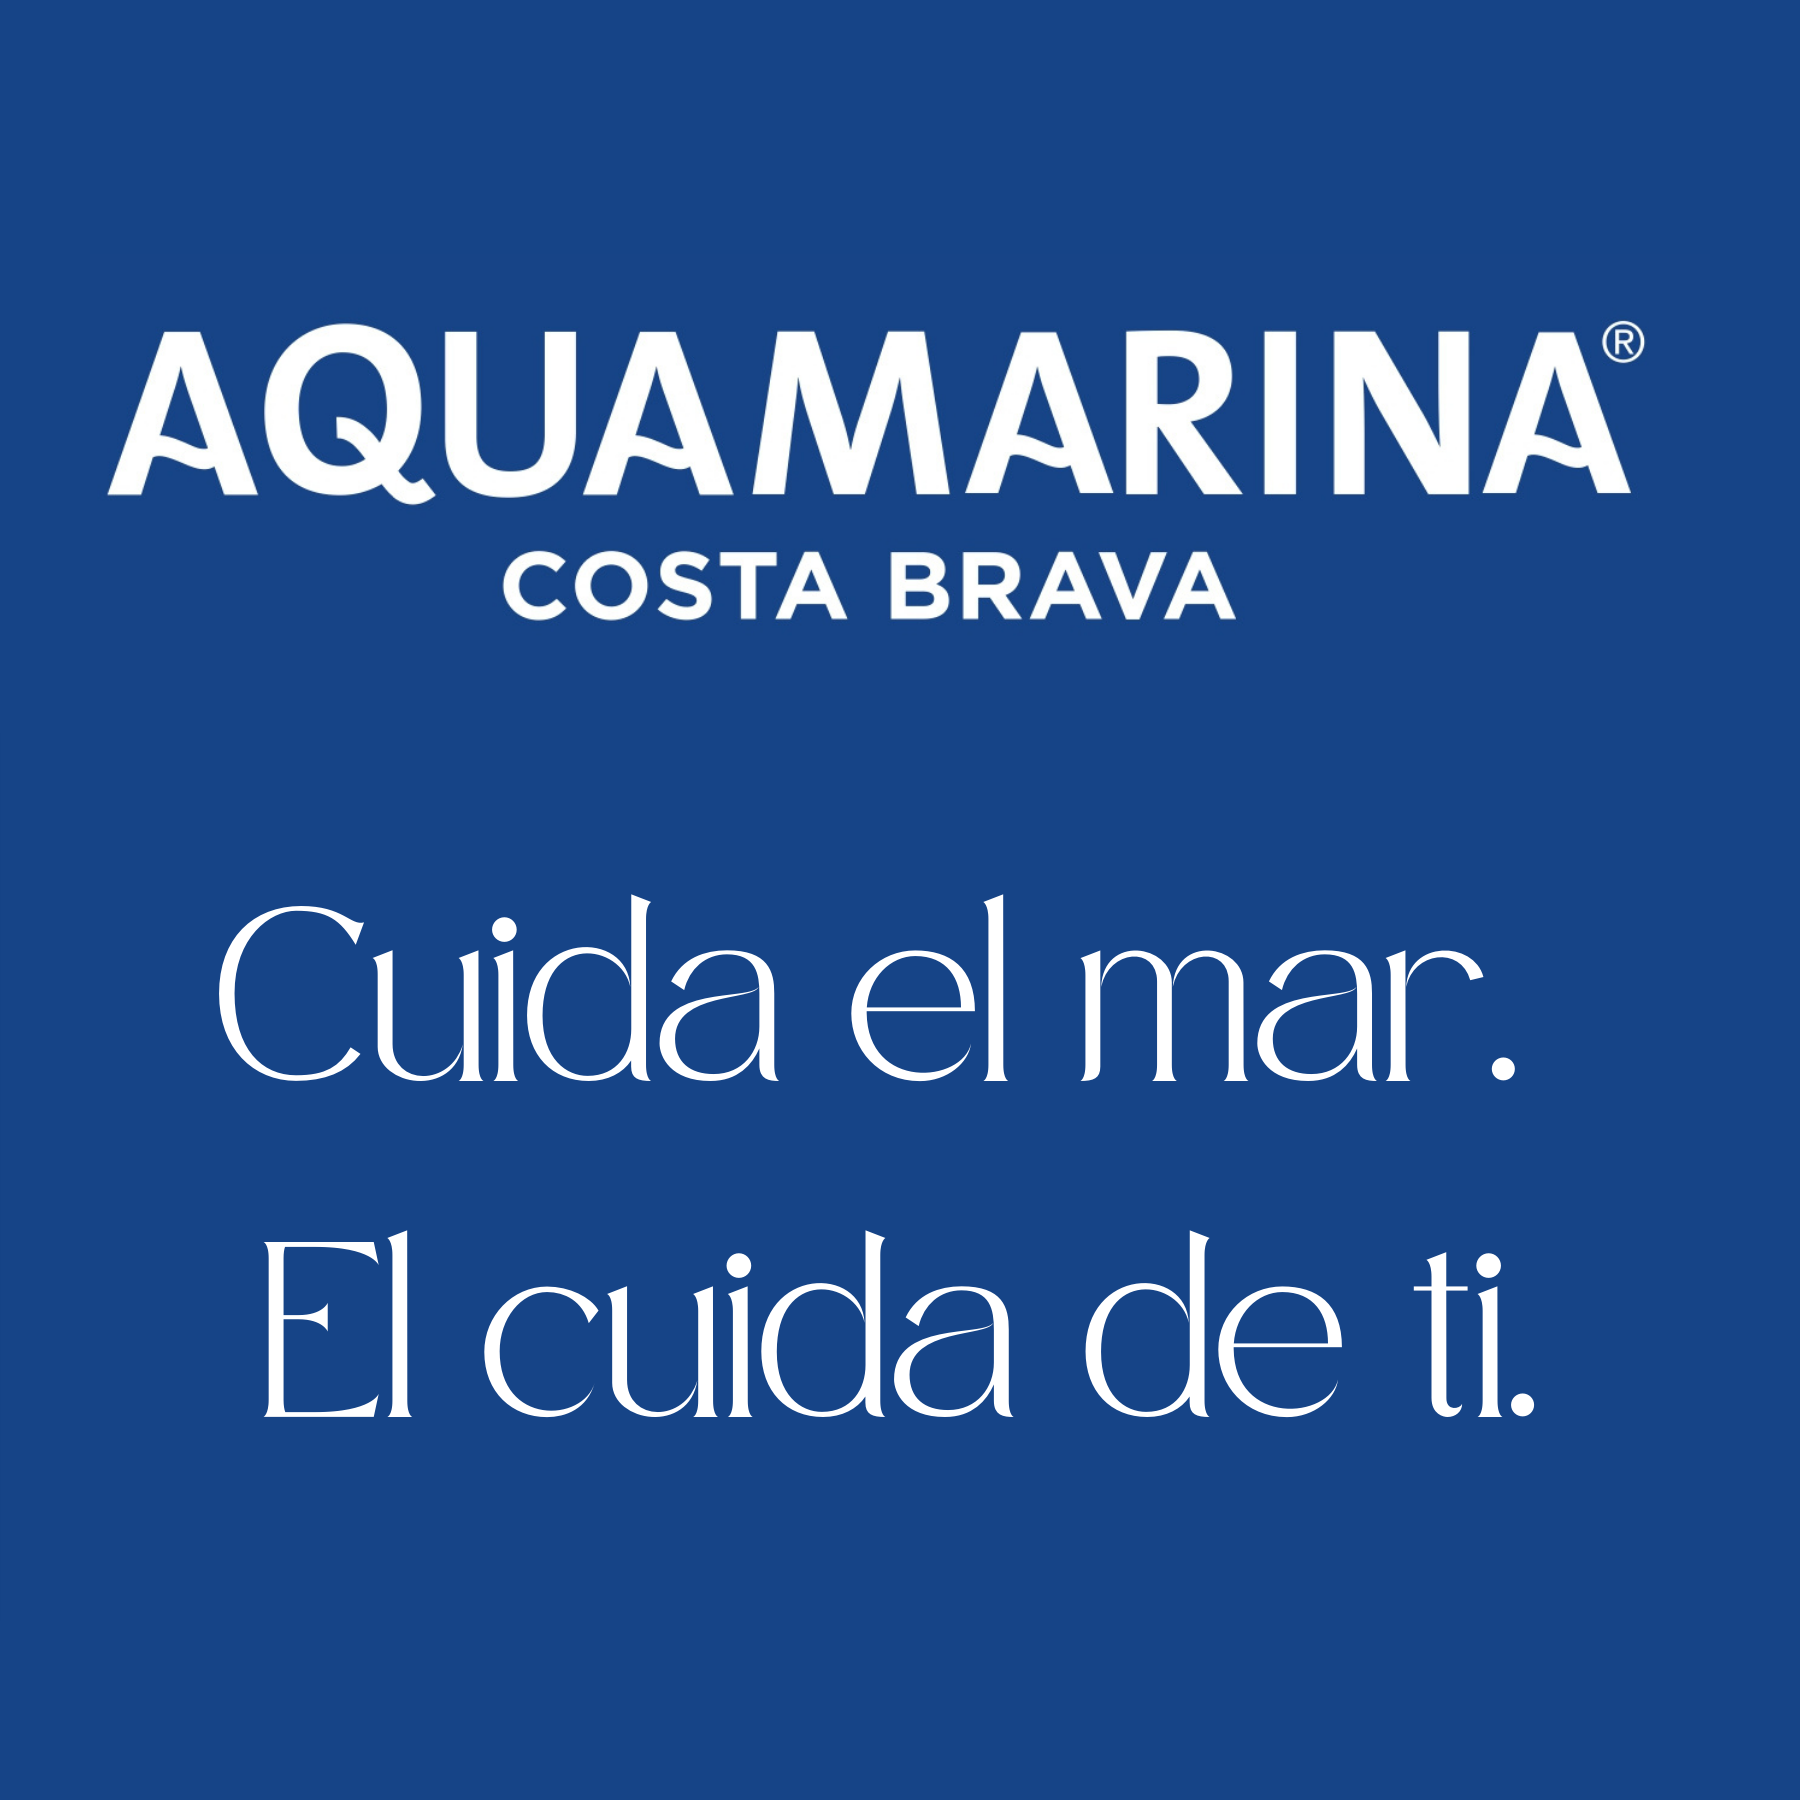 AQUAMARINA Costa Brava. Agua marina Hipertónica 10 Litros Bag In Box. Microfiltrada y sin aditivos. Contiene más de 75 minerales y oligoelementos.